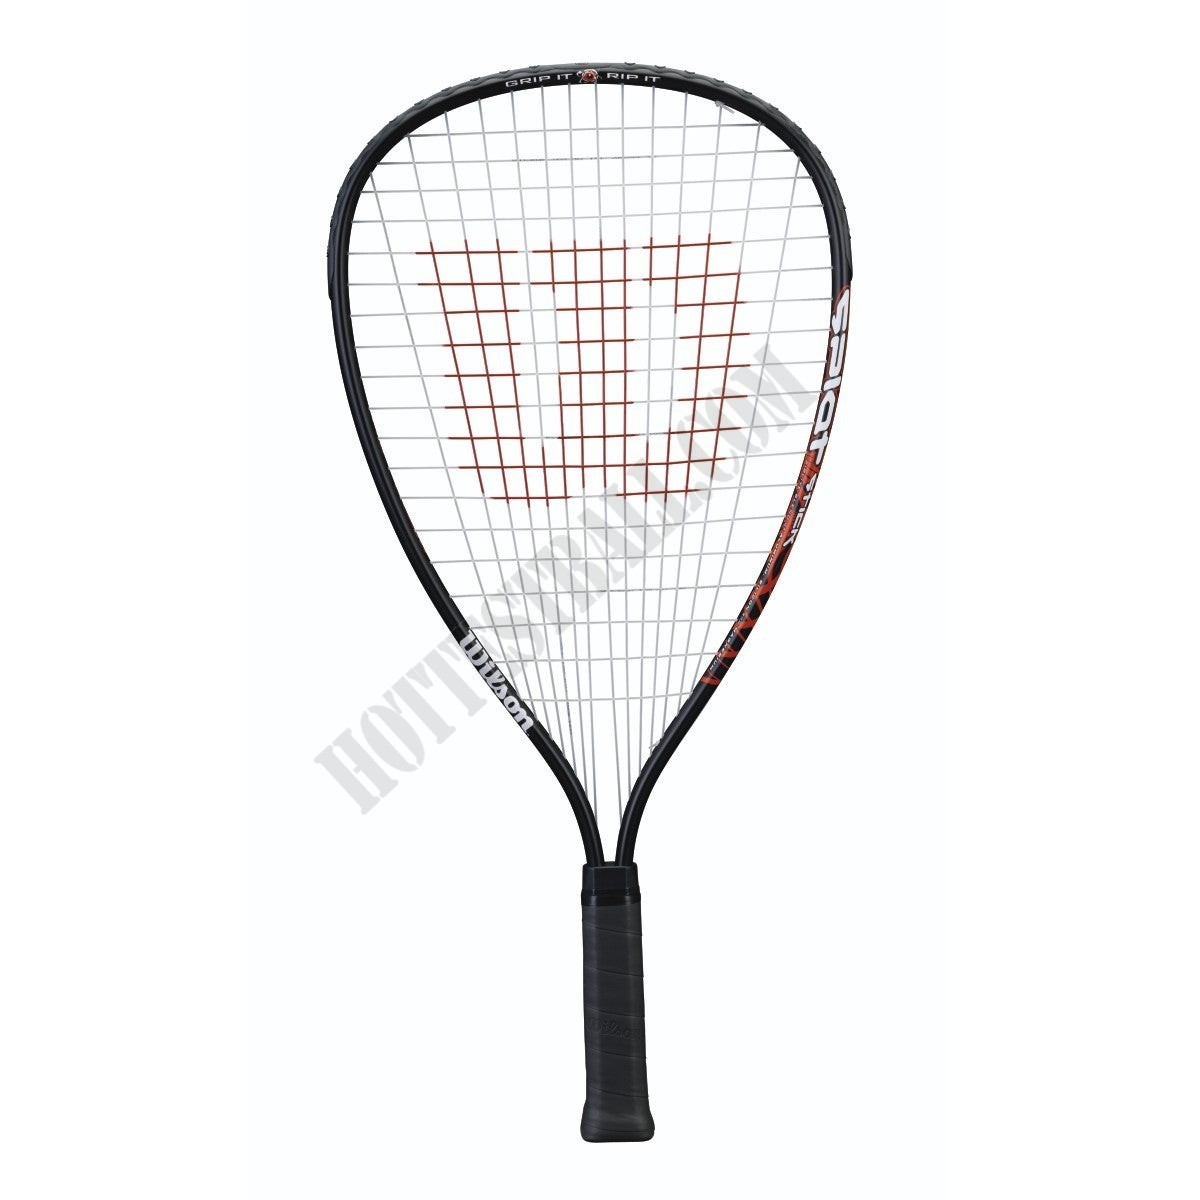 Splat Stick Racquetball Racquet - 3 7/8" (XS) Grip - Wilson Discount Store - -0